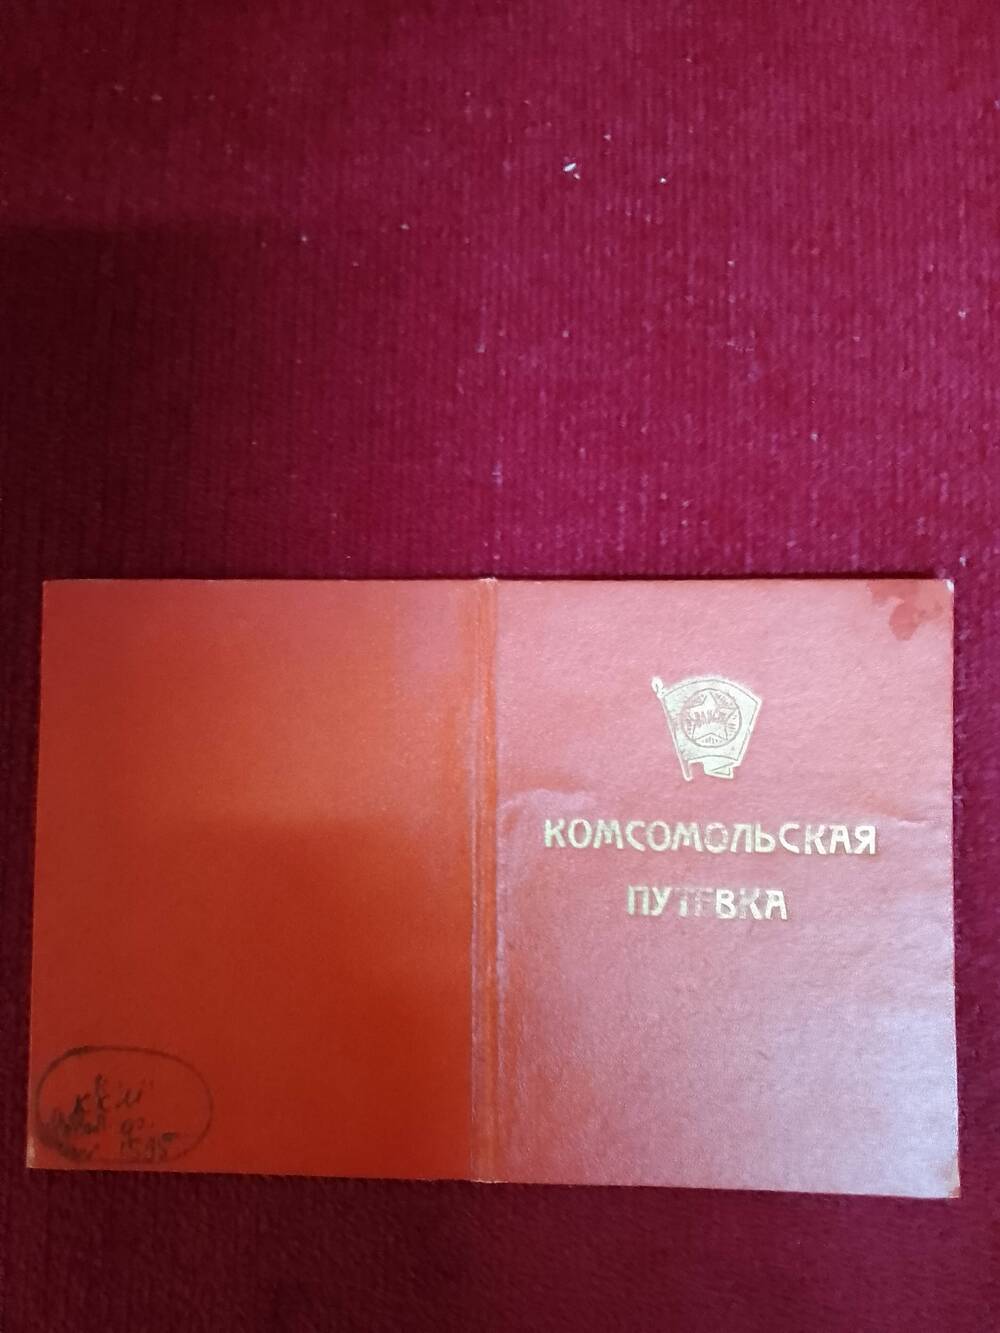 Комсомольская путёвка, выданная горкомом комсомола Чуйко П. И. для работы в системе потребкооперации Клинцовского района. 3 октября 1958 г.